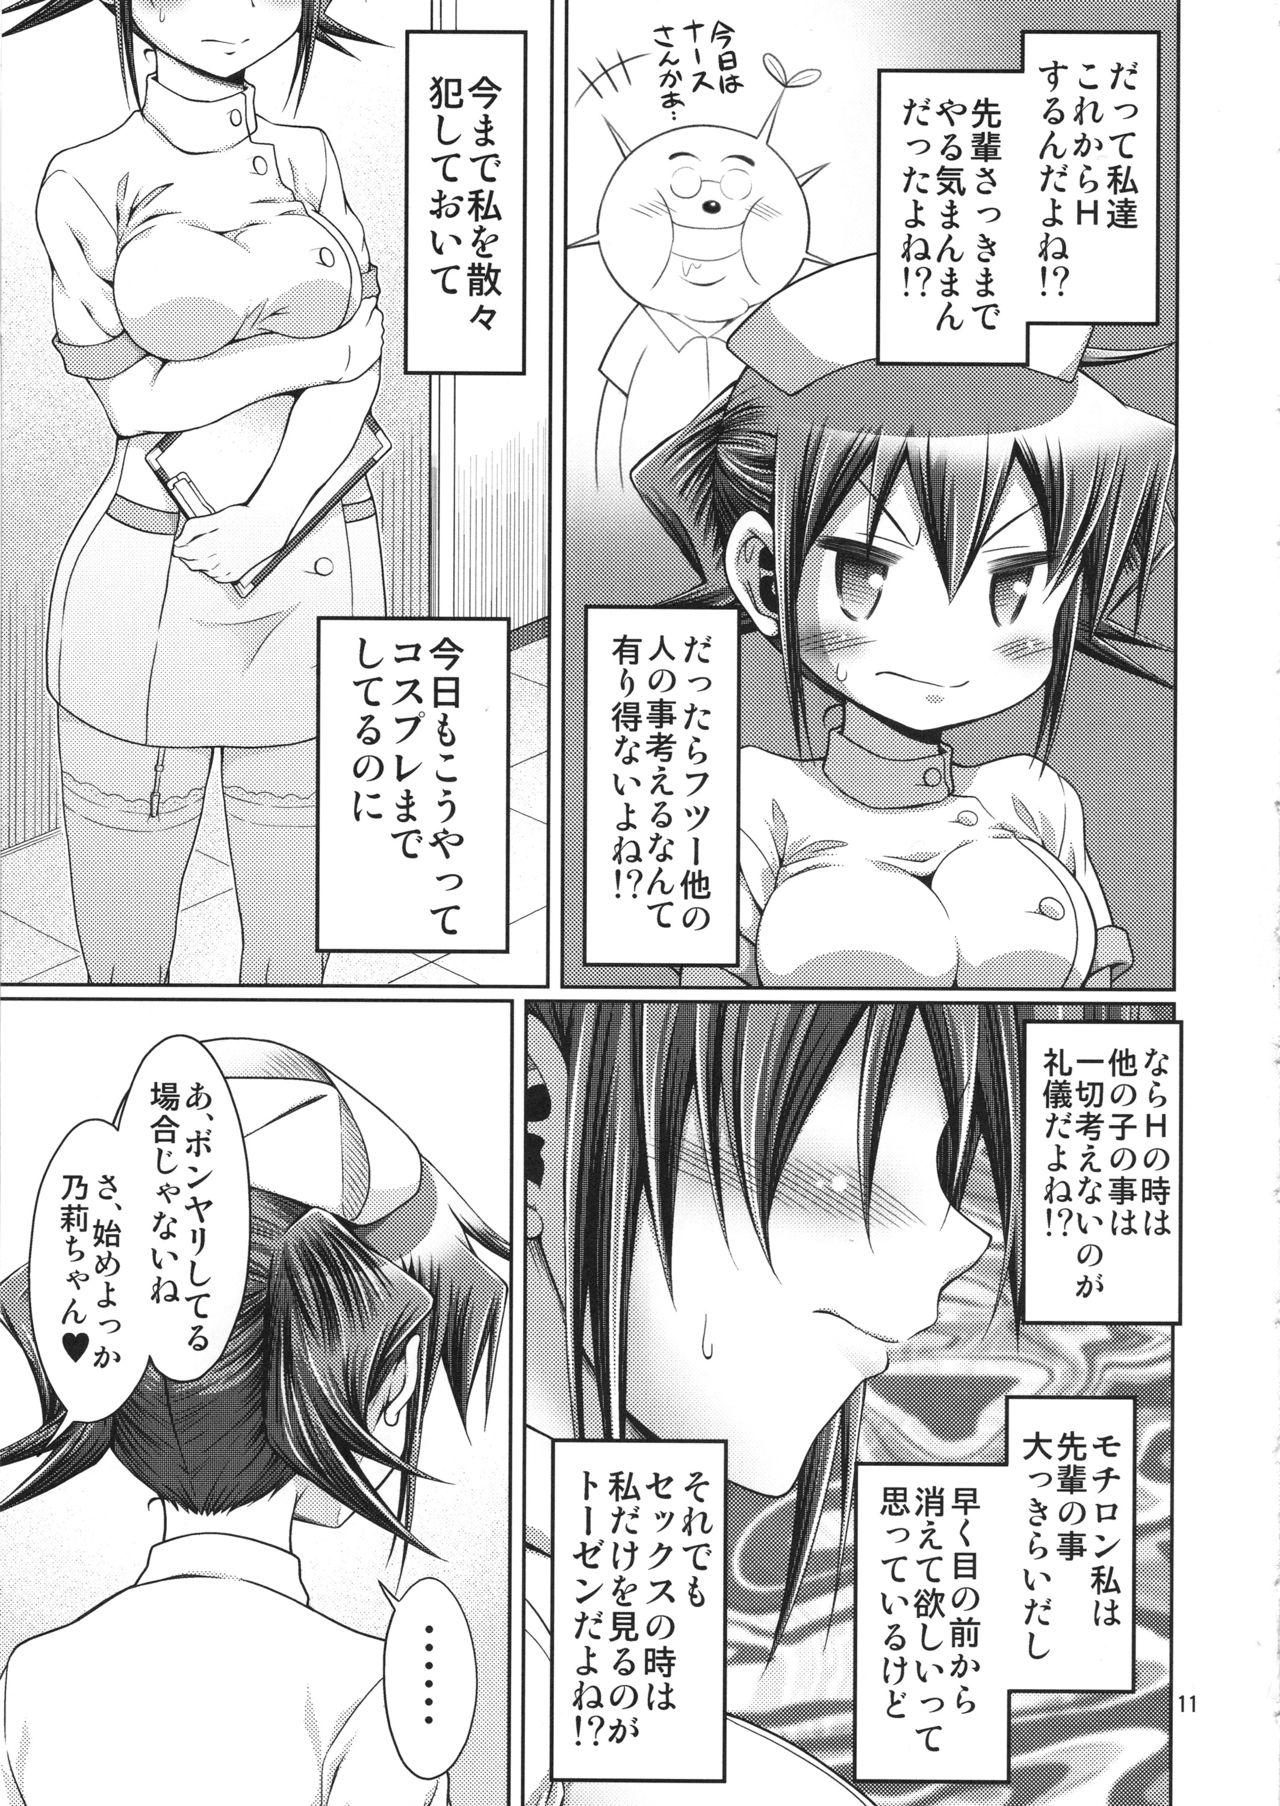 Gape IT Shoujo N Tokubetsuhen 10 Nori-chan no Oppai Kinenbi - Hidamari sketch Gay Broken - Page 10